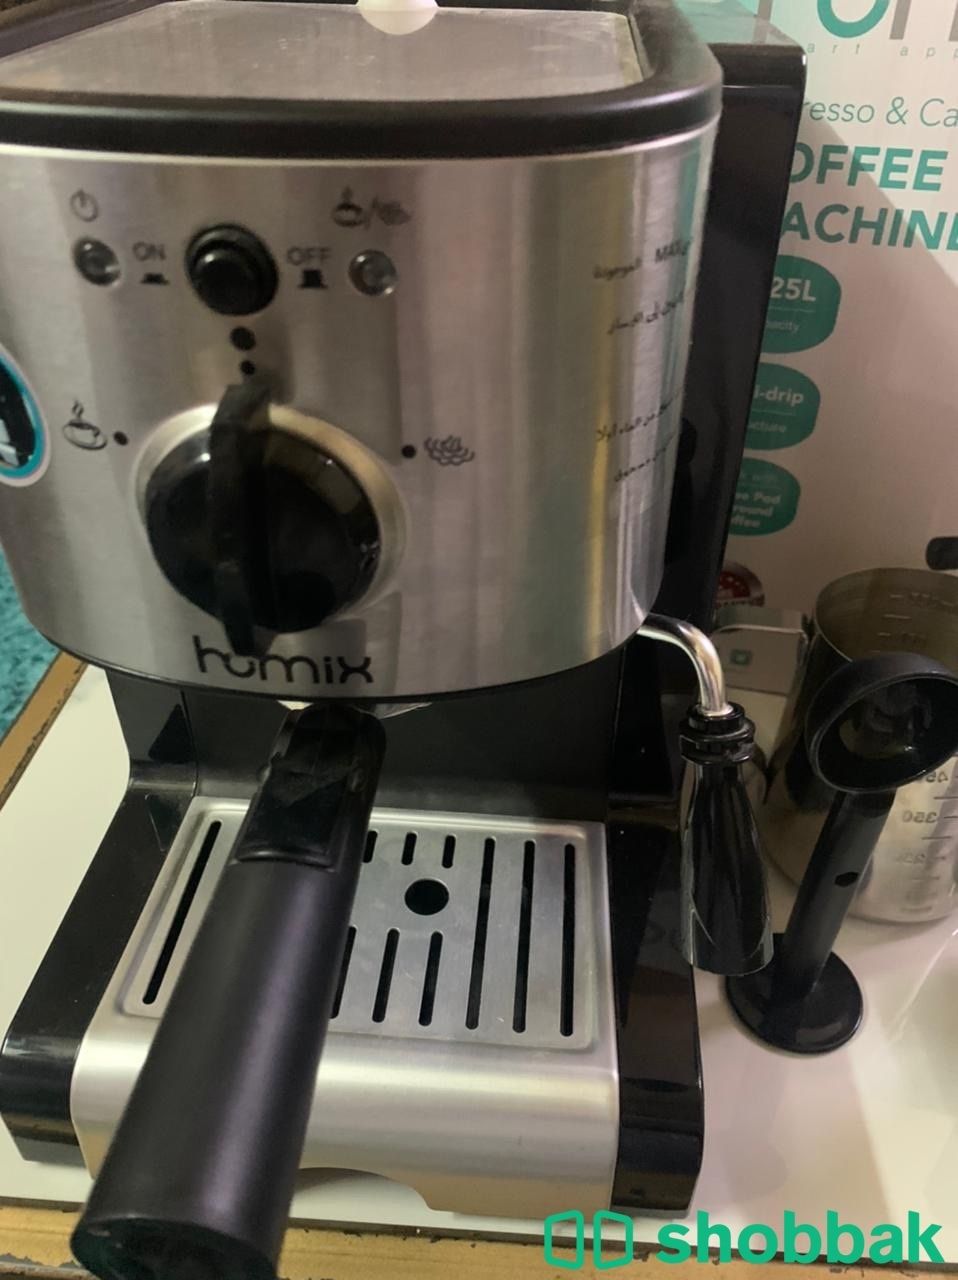 آلة قهوه جديدة معا ملحقات  Shobbak Saudi Arabia